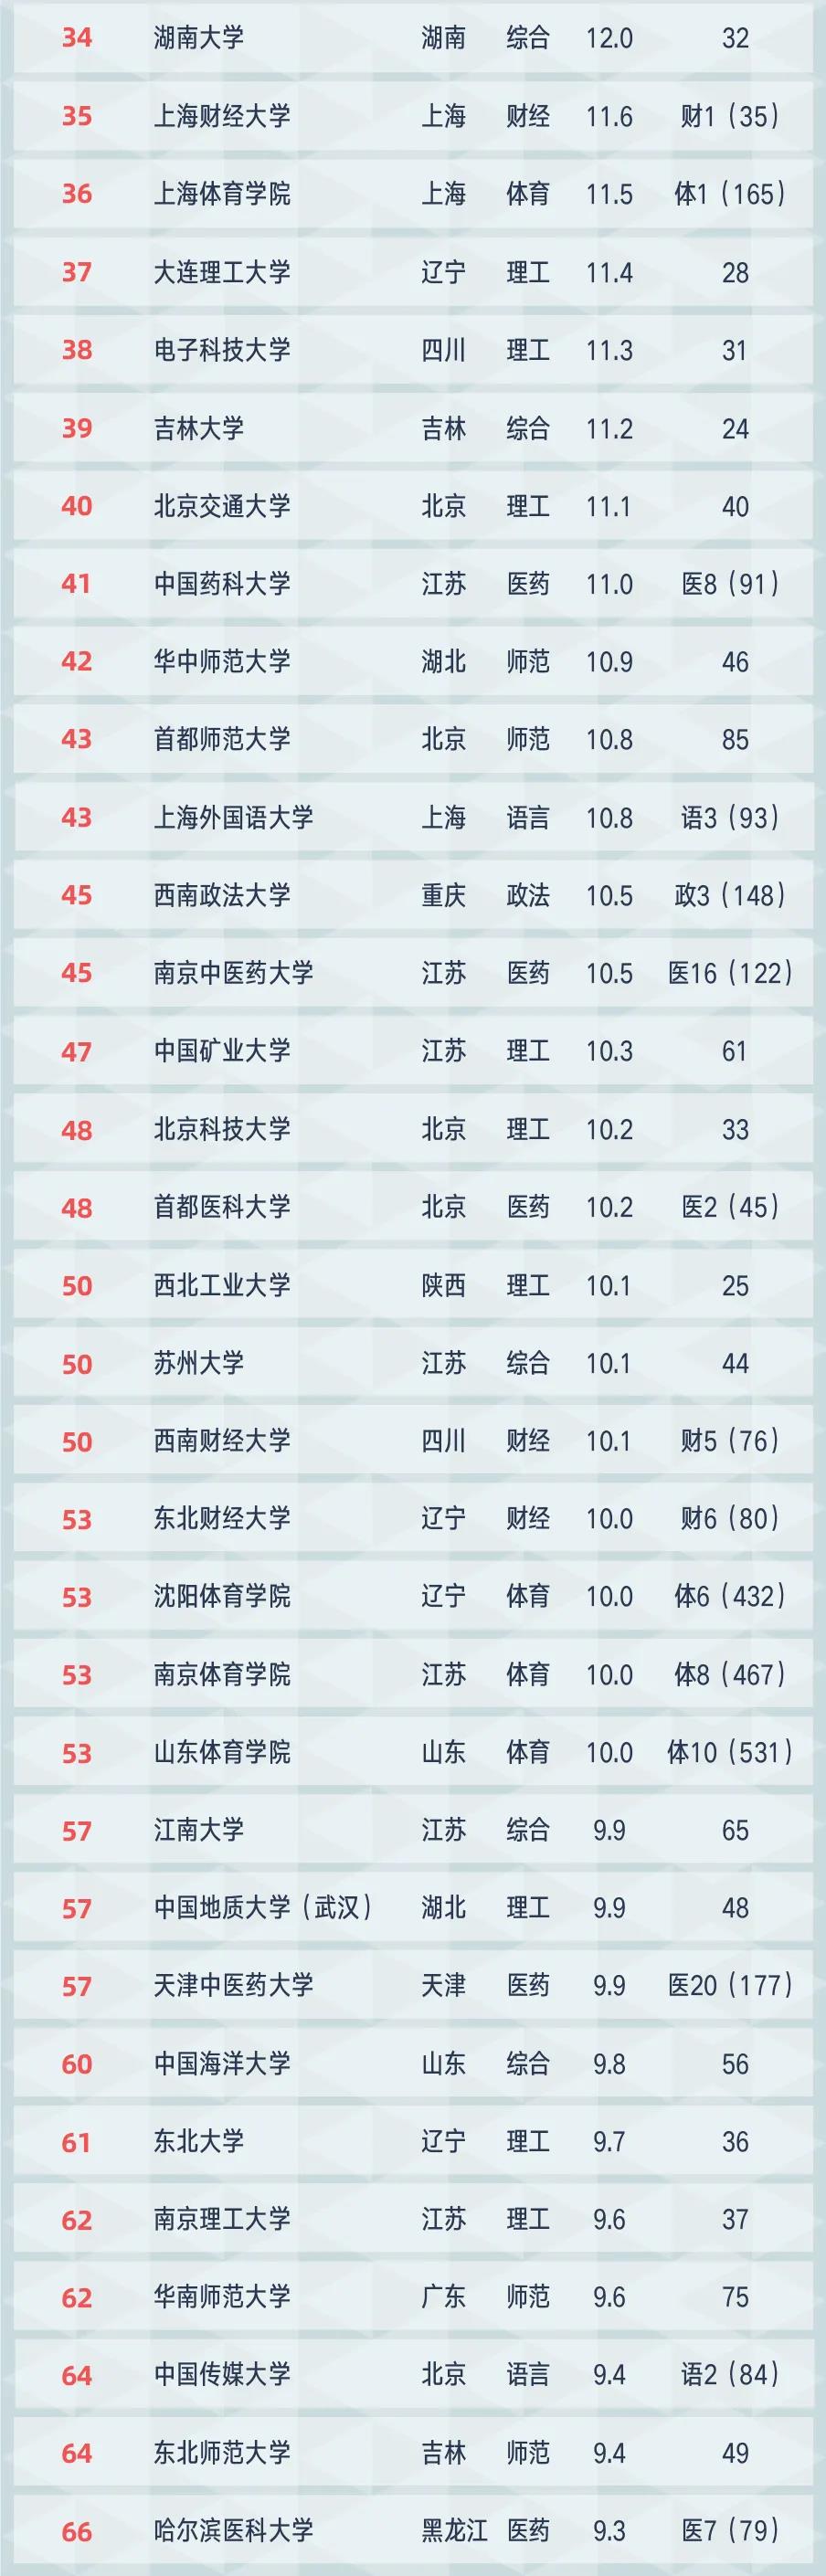 2021中国大学排名top100